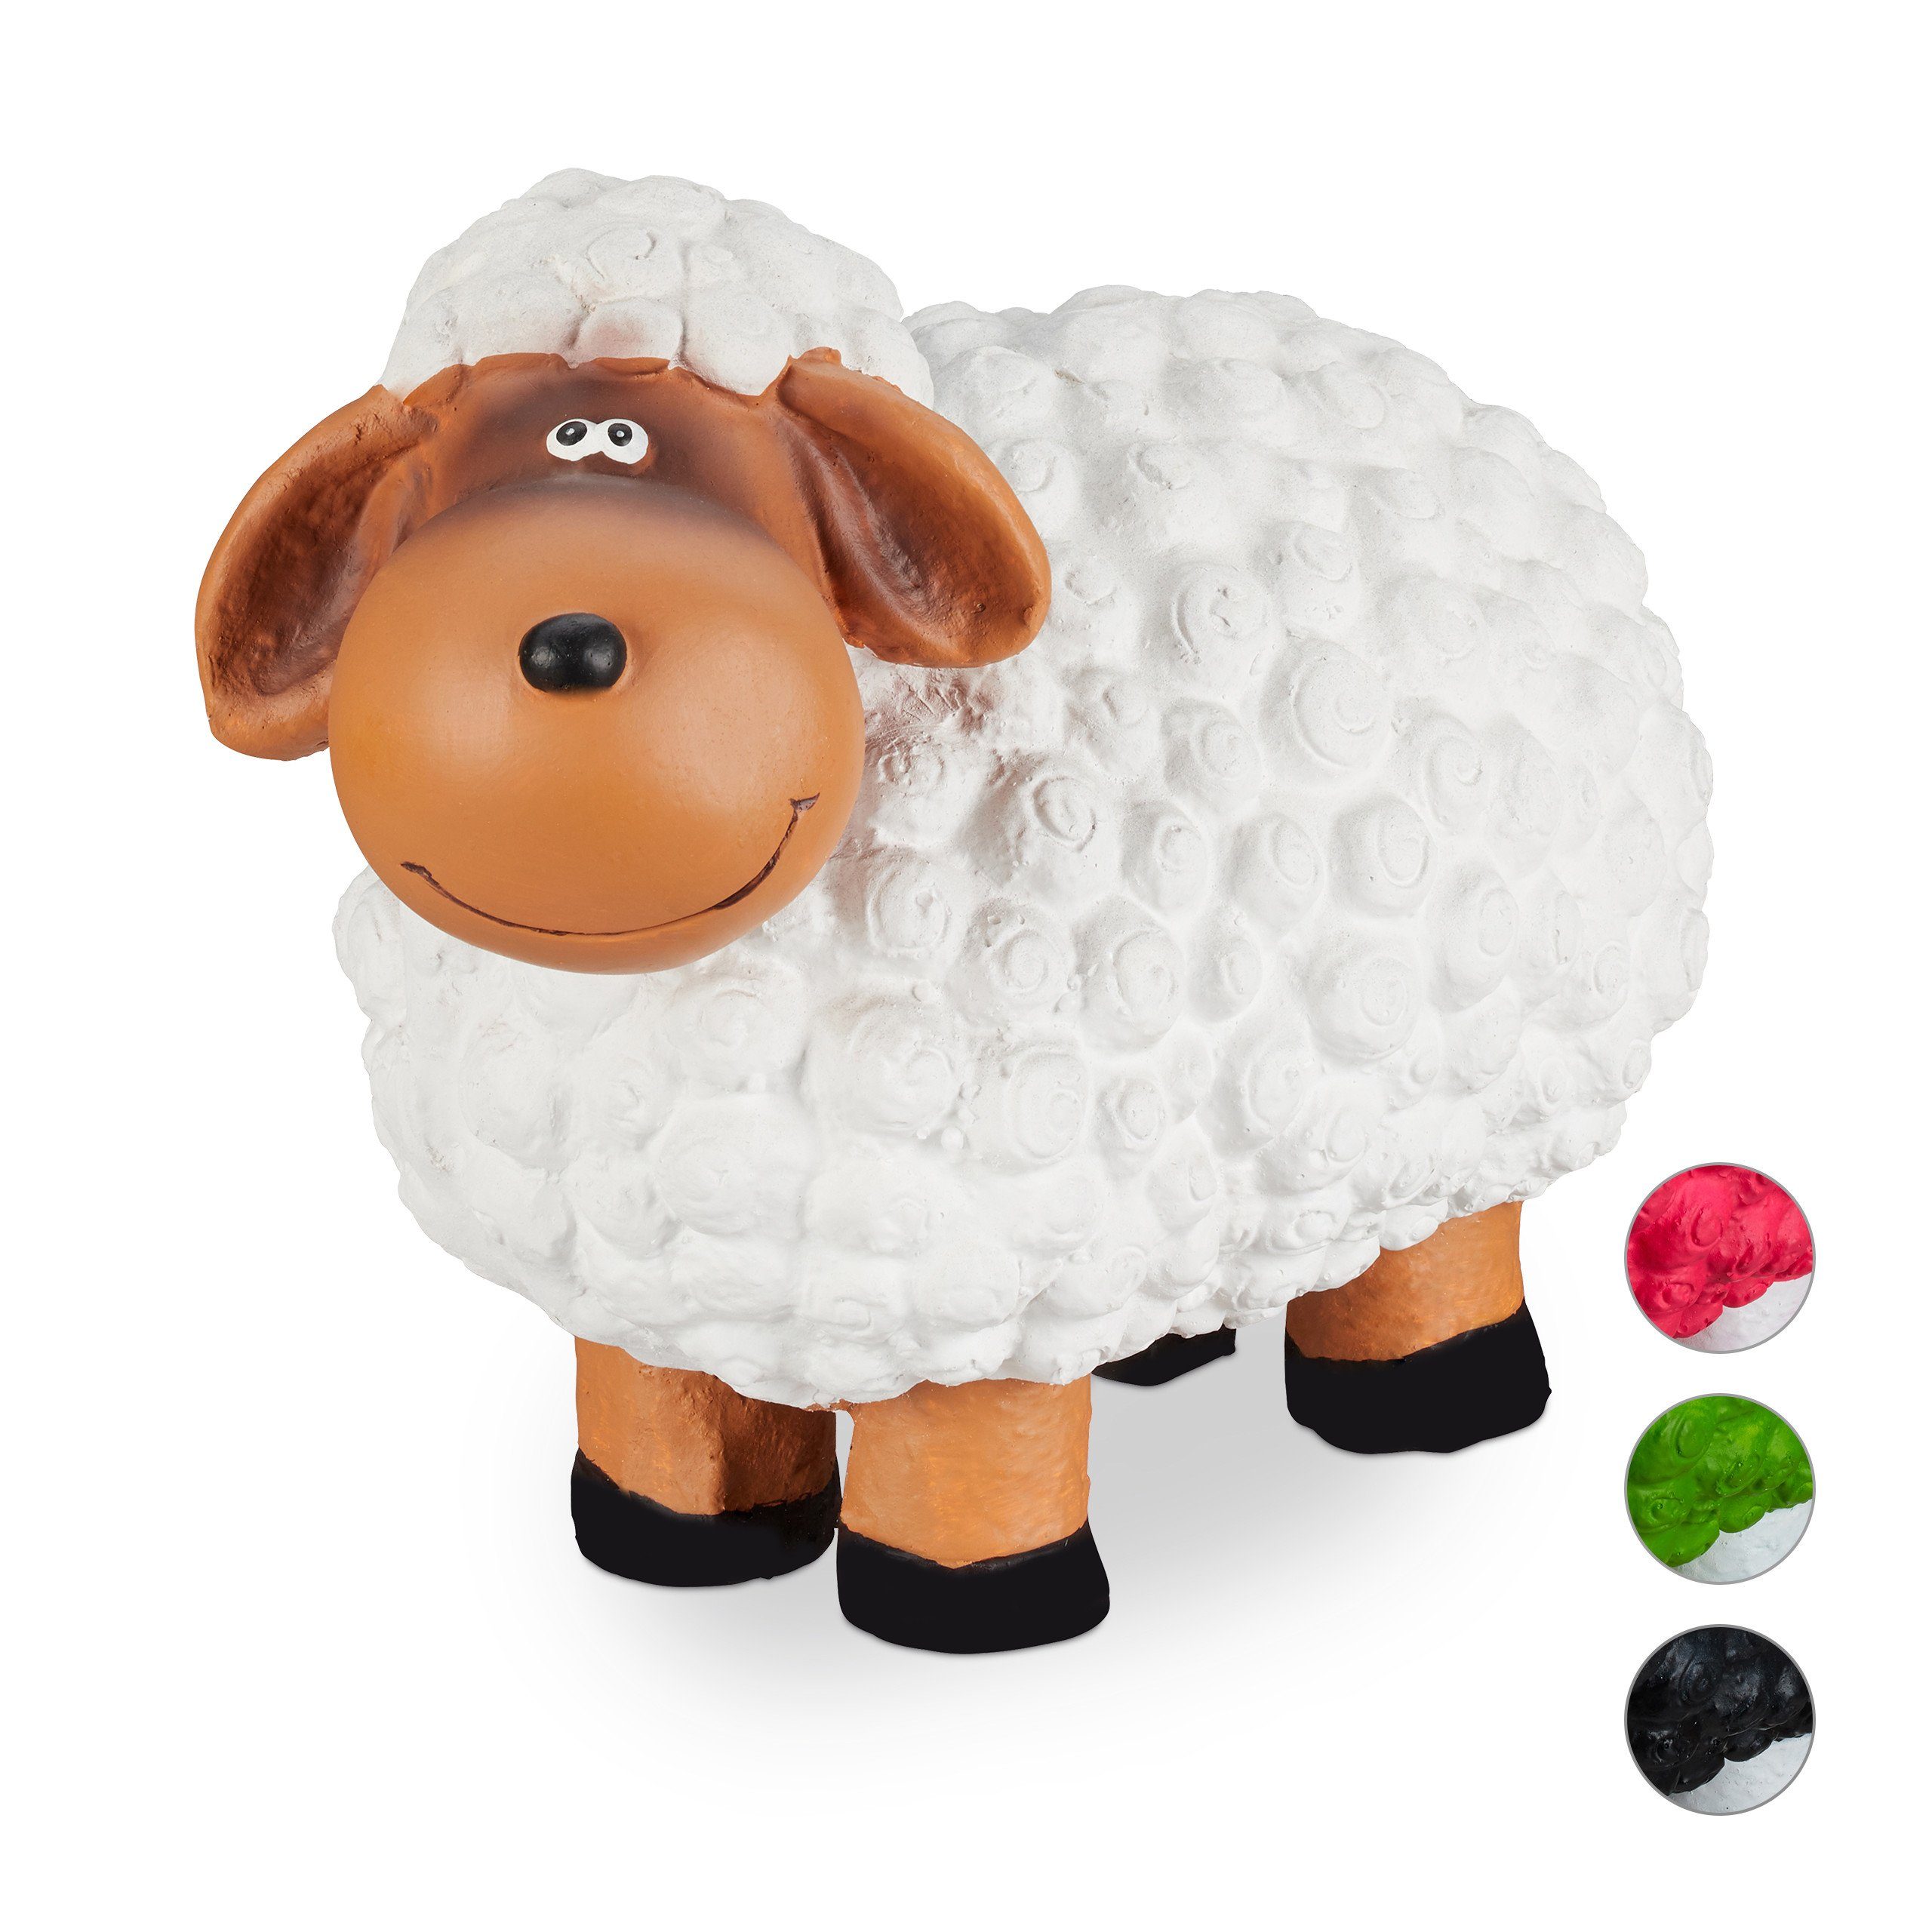 Stehendes Schaf Bauernhof Yard Tier Modell Spielzeug Figur HOME Dekor Handarbeit 